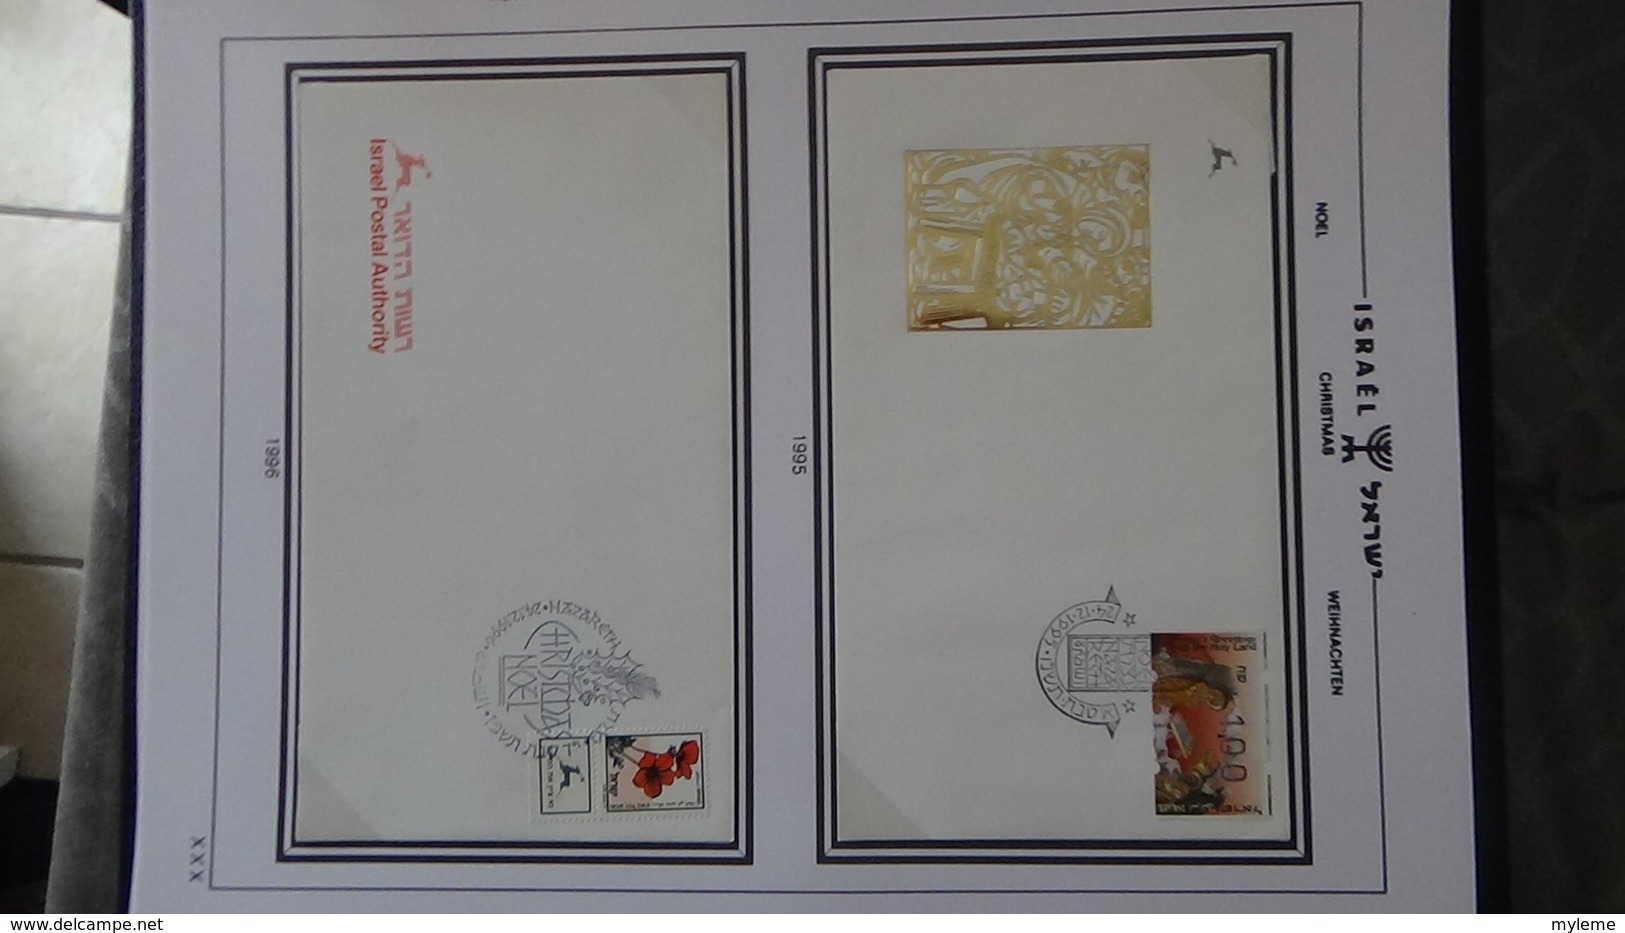 Très beau classeur SHEPS de 60 enveloppes de Noël d'Israël de 1968 à 2002. Villes différentes. A saisir  !!!